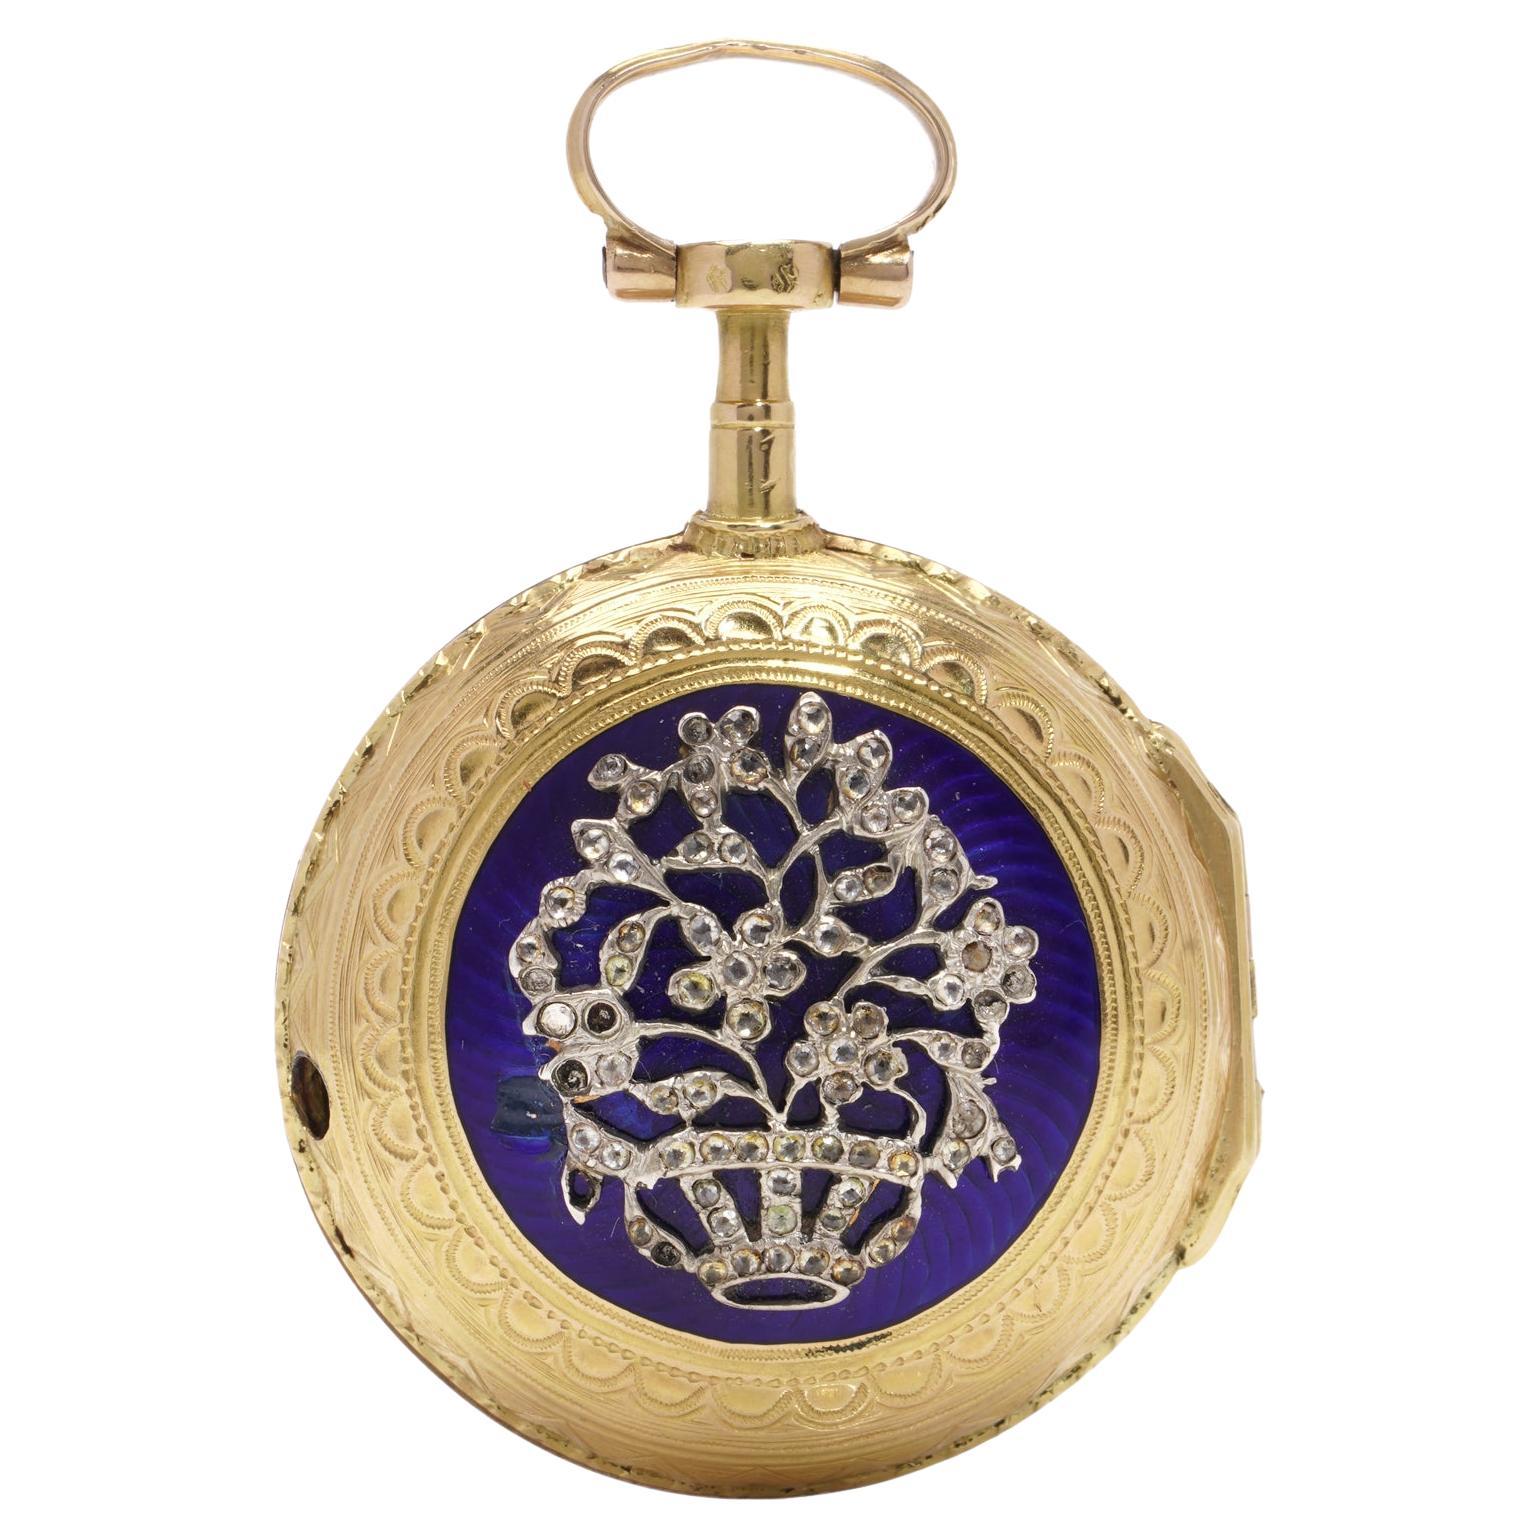 Lépine Verge Uhrwerk aus dem 18. Jahrhundert mit Schlüsselaufzug aus 18kt Gold, eine silberne Taschenuhr